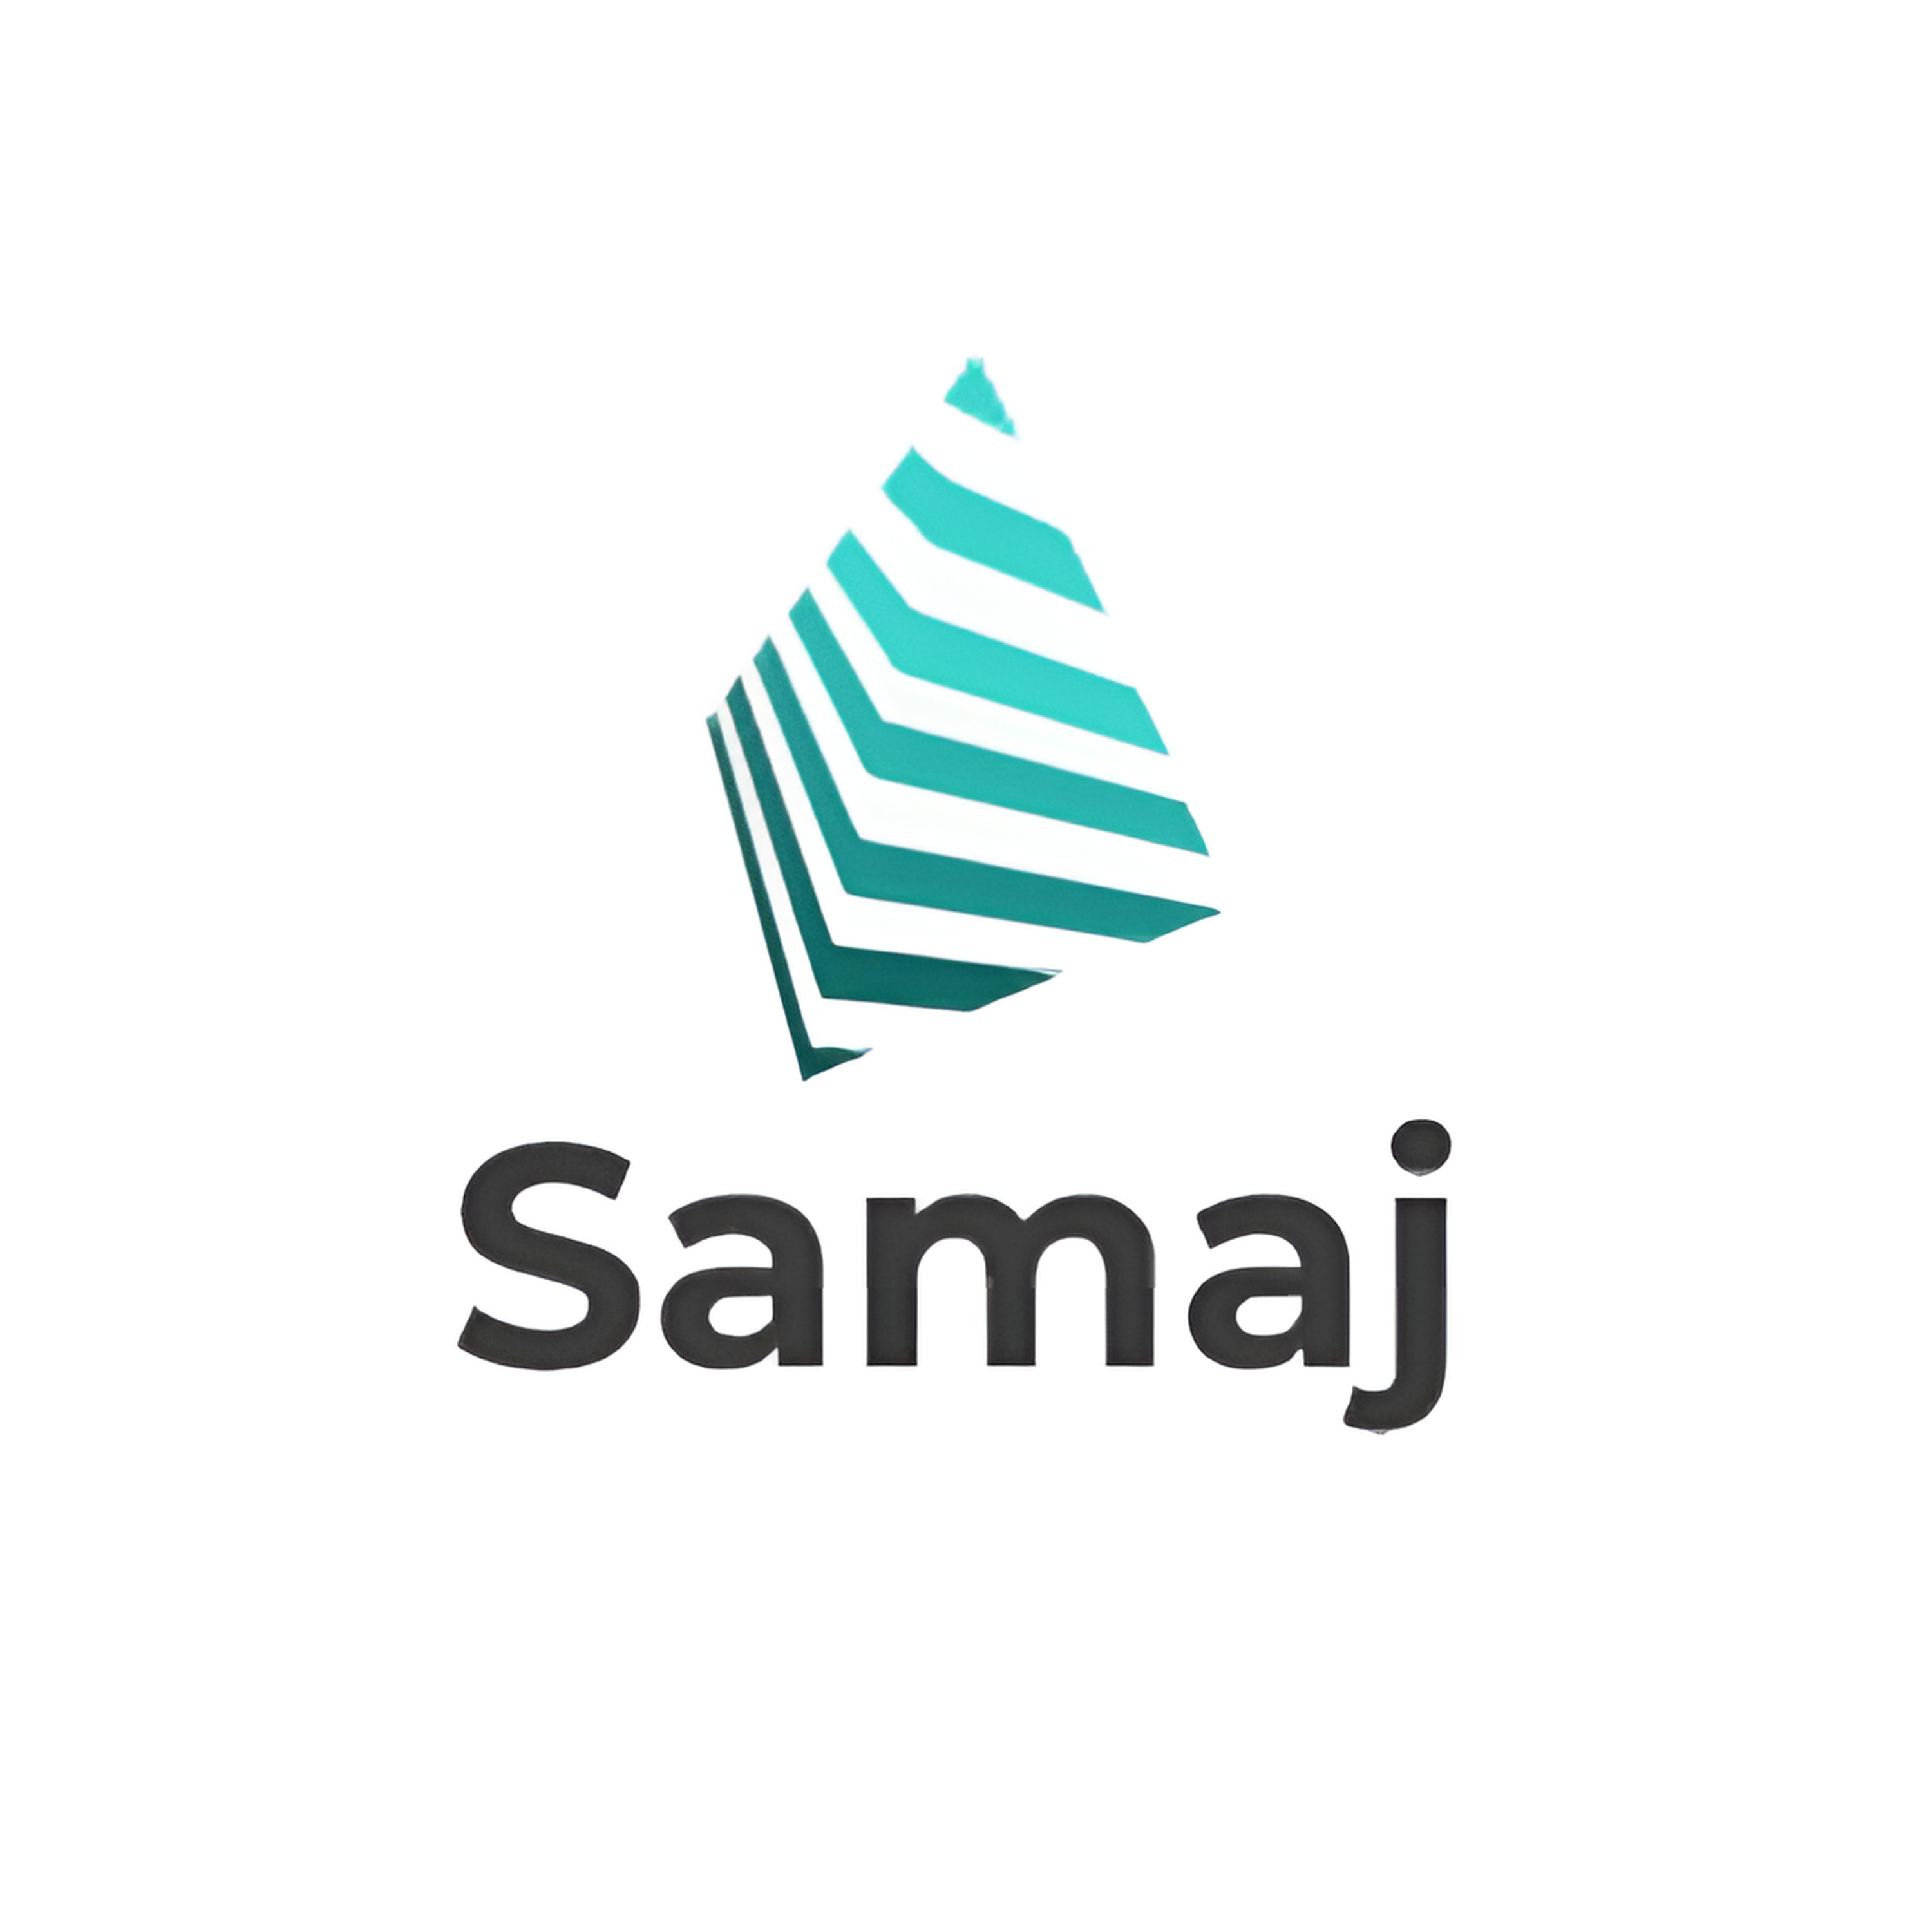 Samaj logo image